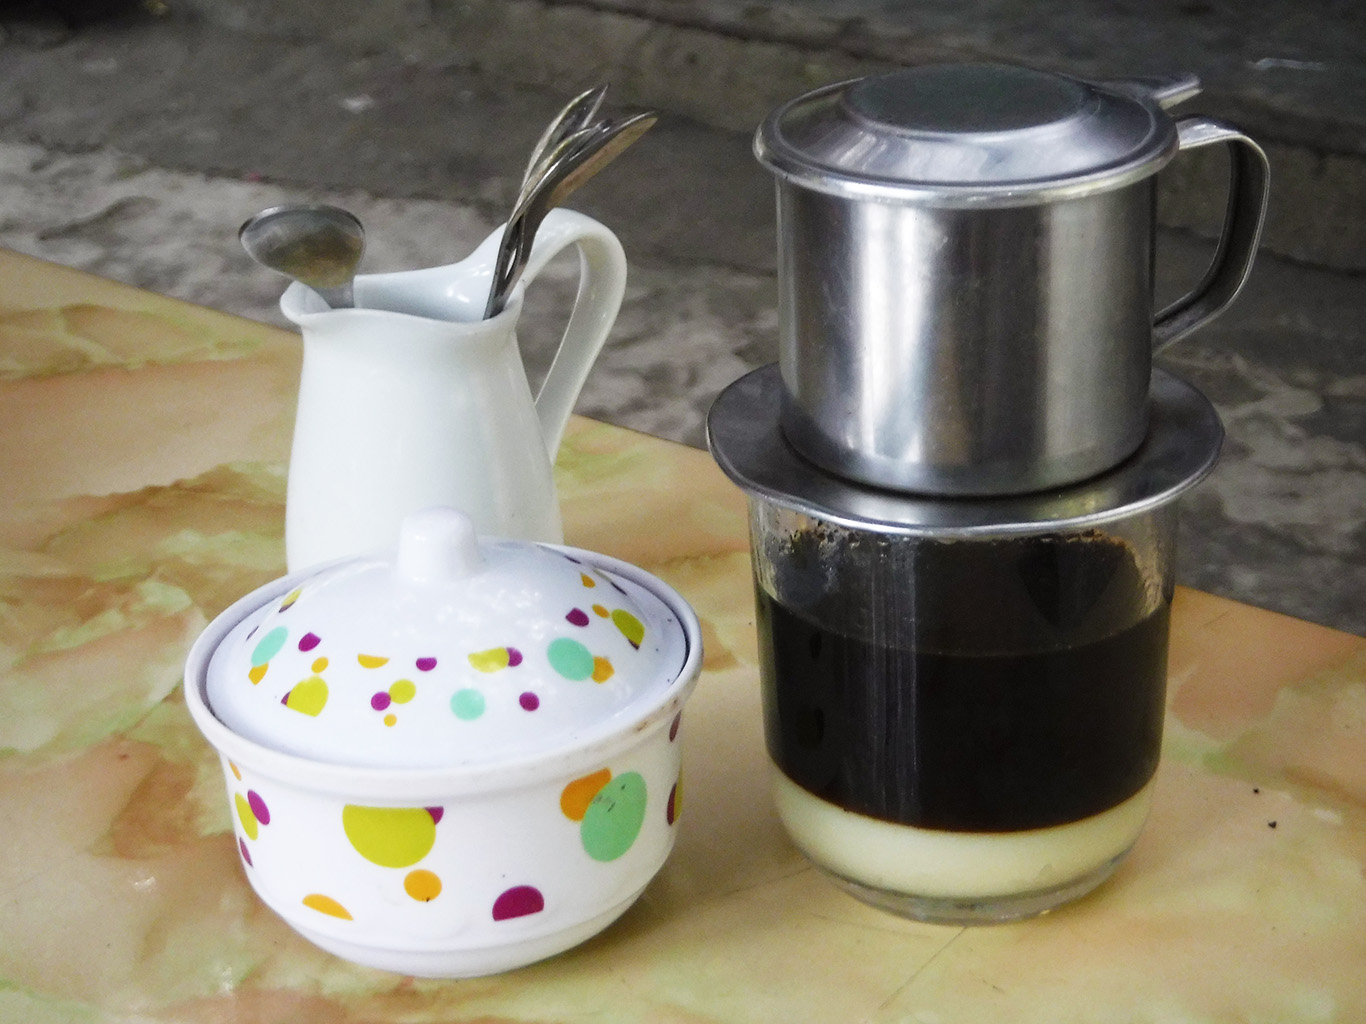 Káva se ve Vietnamu často servíruje s kondenzovaným mlékem 